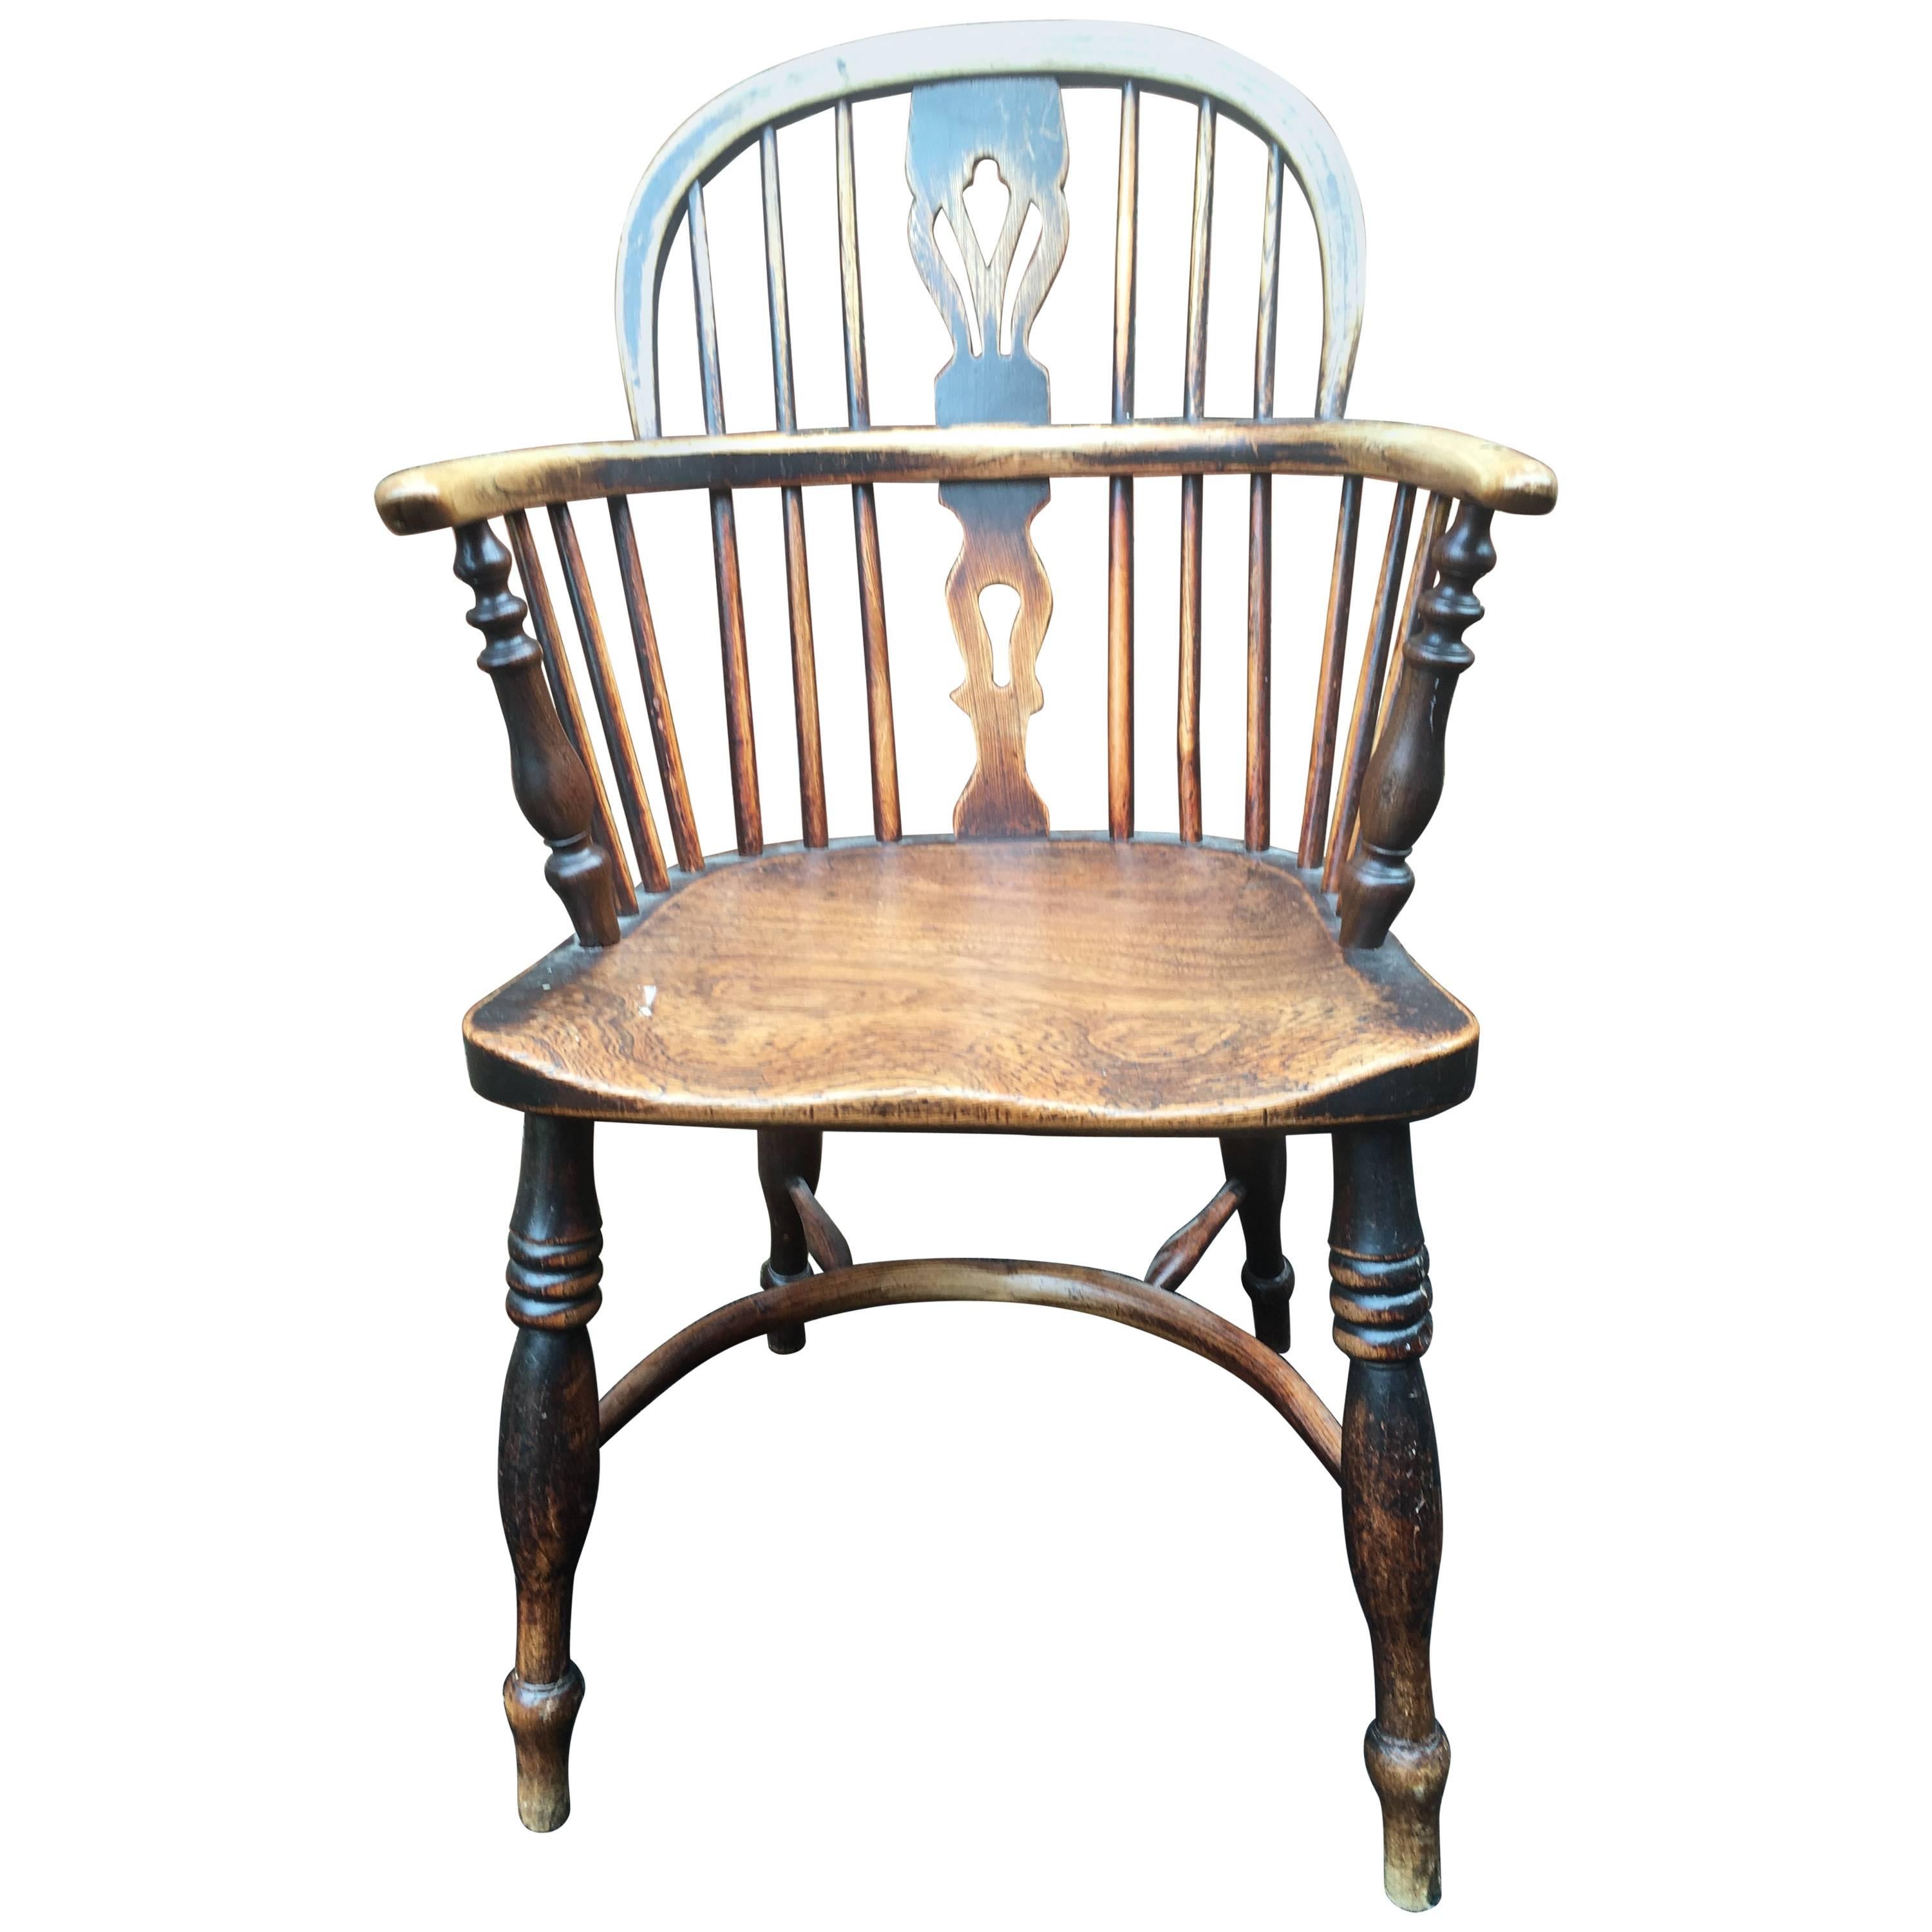 Elm Windsor Chair, Rockley Maker